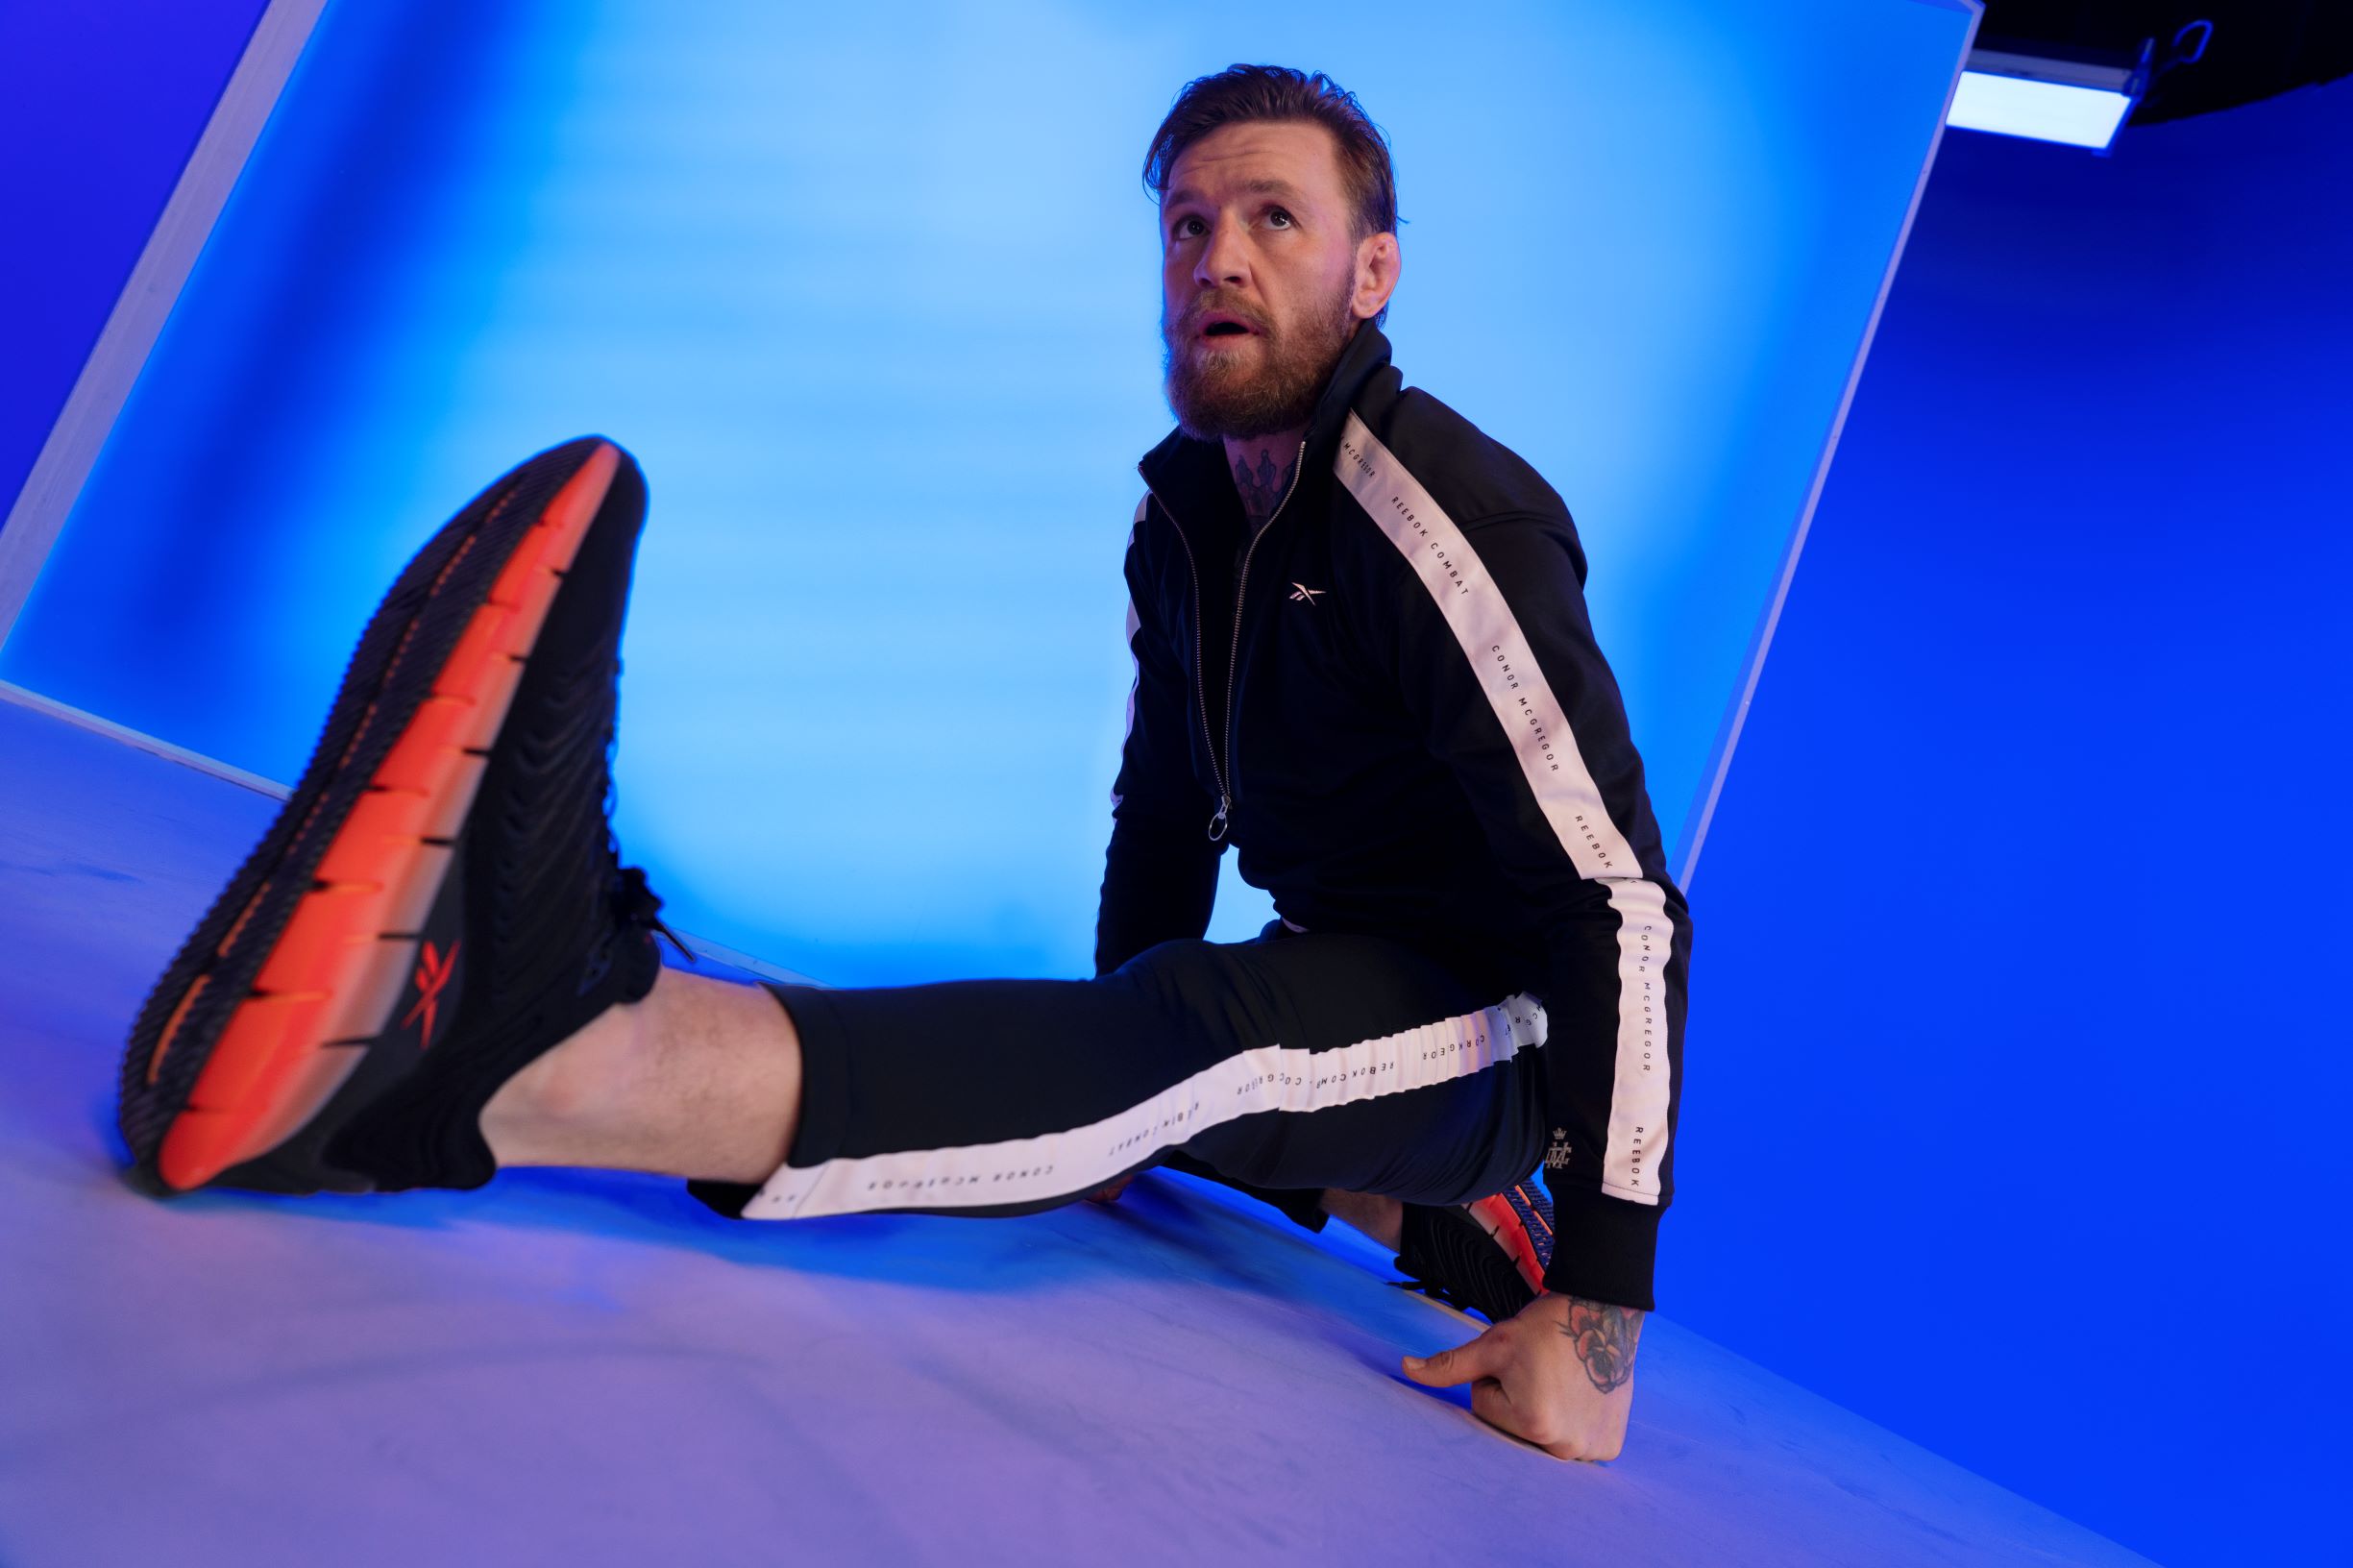 Reebok and Conor McGregor Launch New 'Zig Kinetica' Sneaker - Maxim